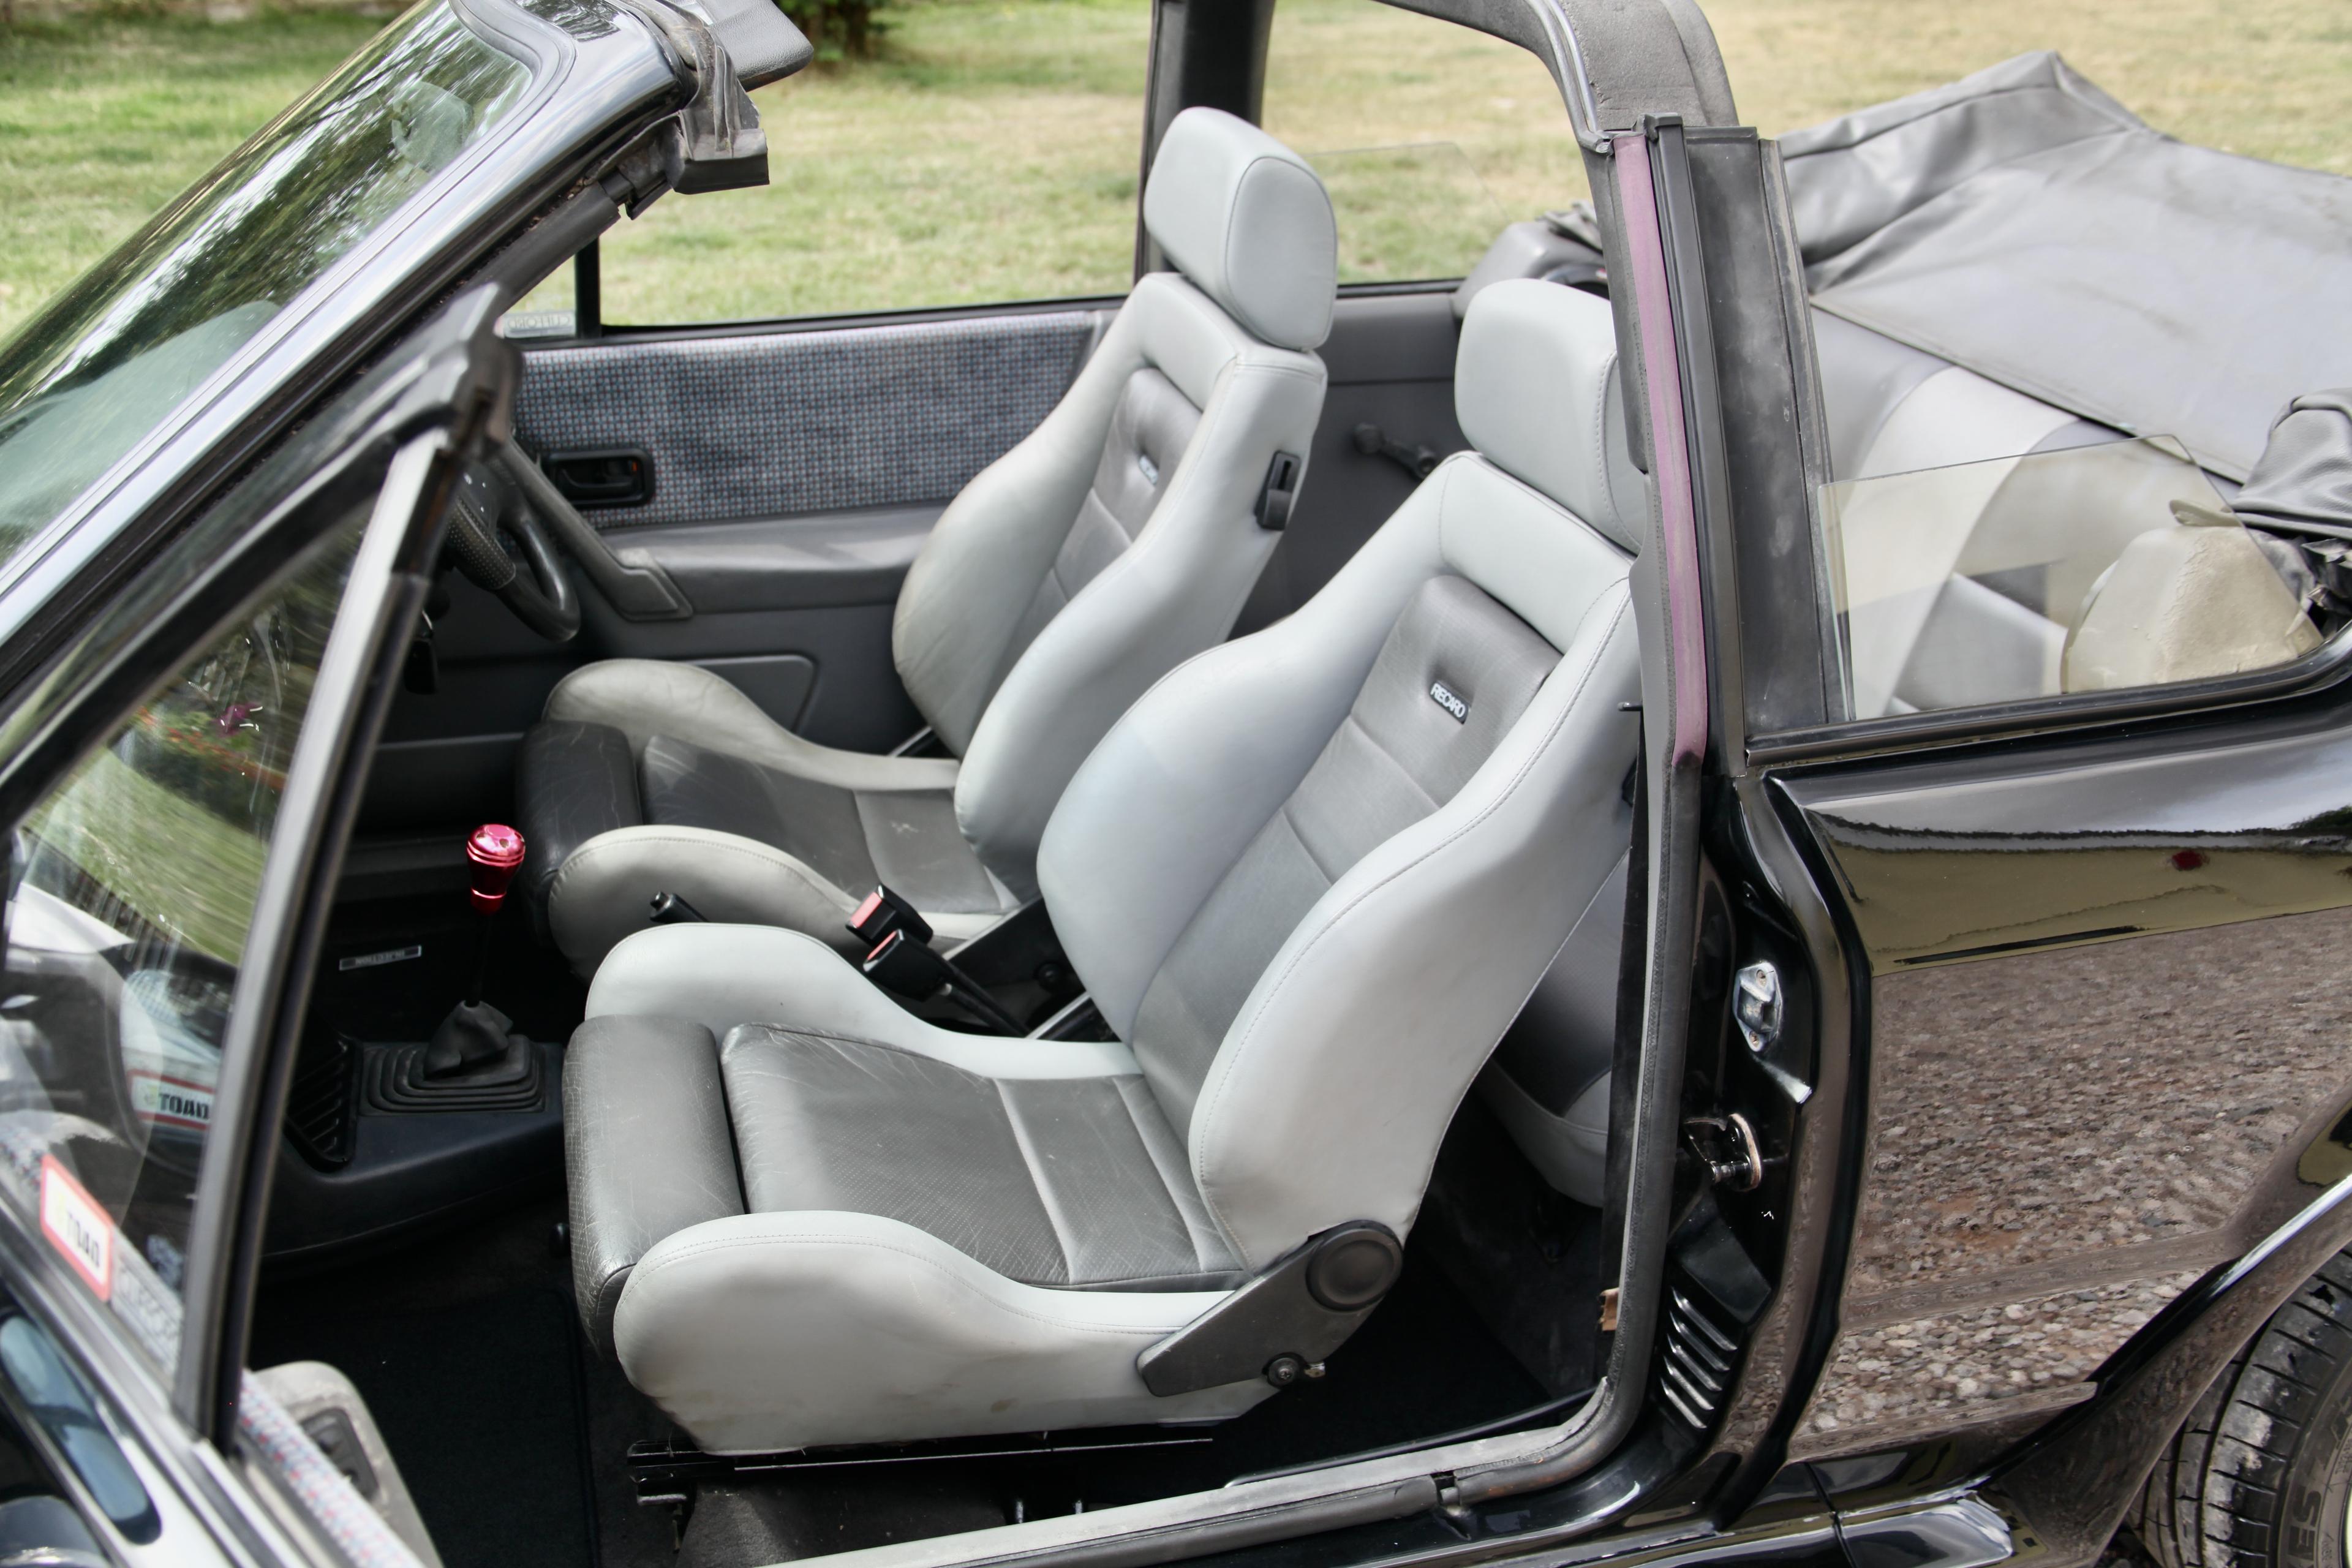 Das Modell XR3i war zunächst ein Ford Escort Cabriolet